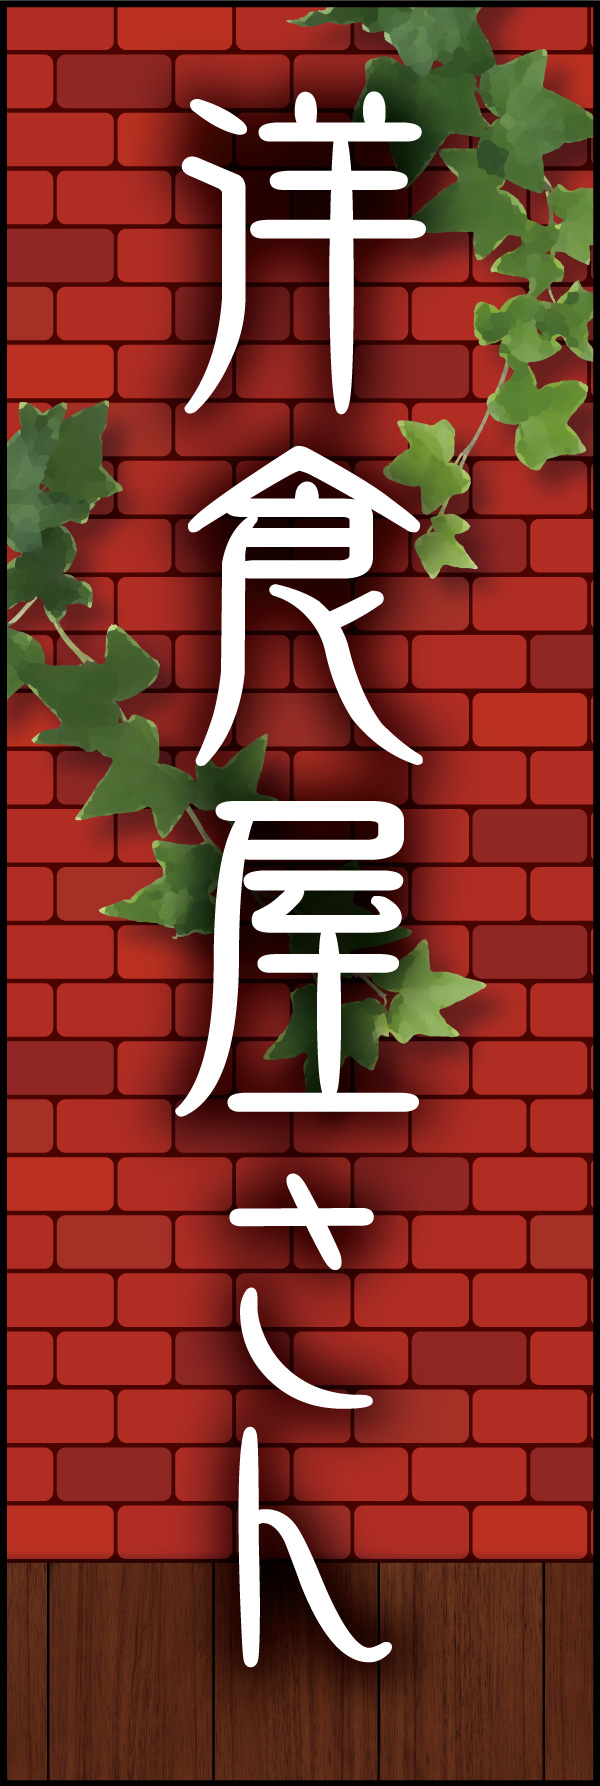 洋食屋さん 03 「洋食屋さん」ののぼりです。赤煉瓦をバックに、懐かしい洋食屋さんをイメージしてデザインしました。(Y.M)